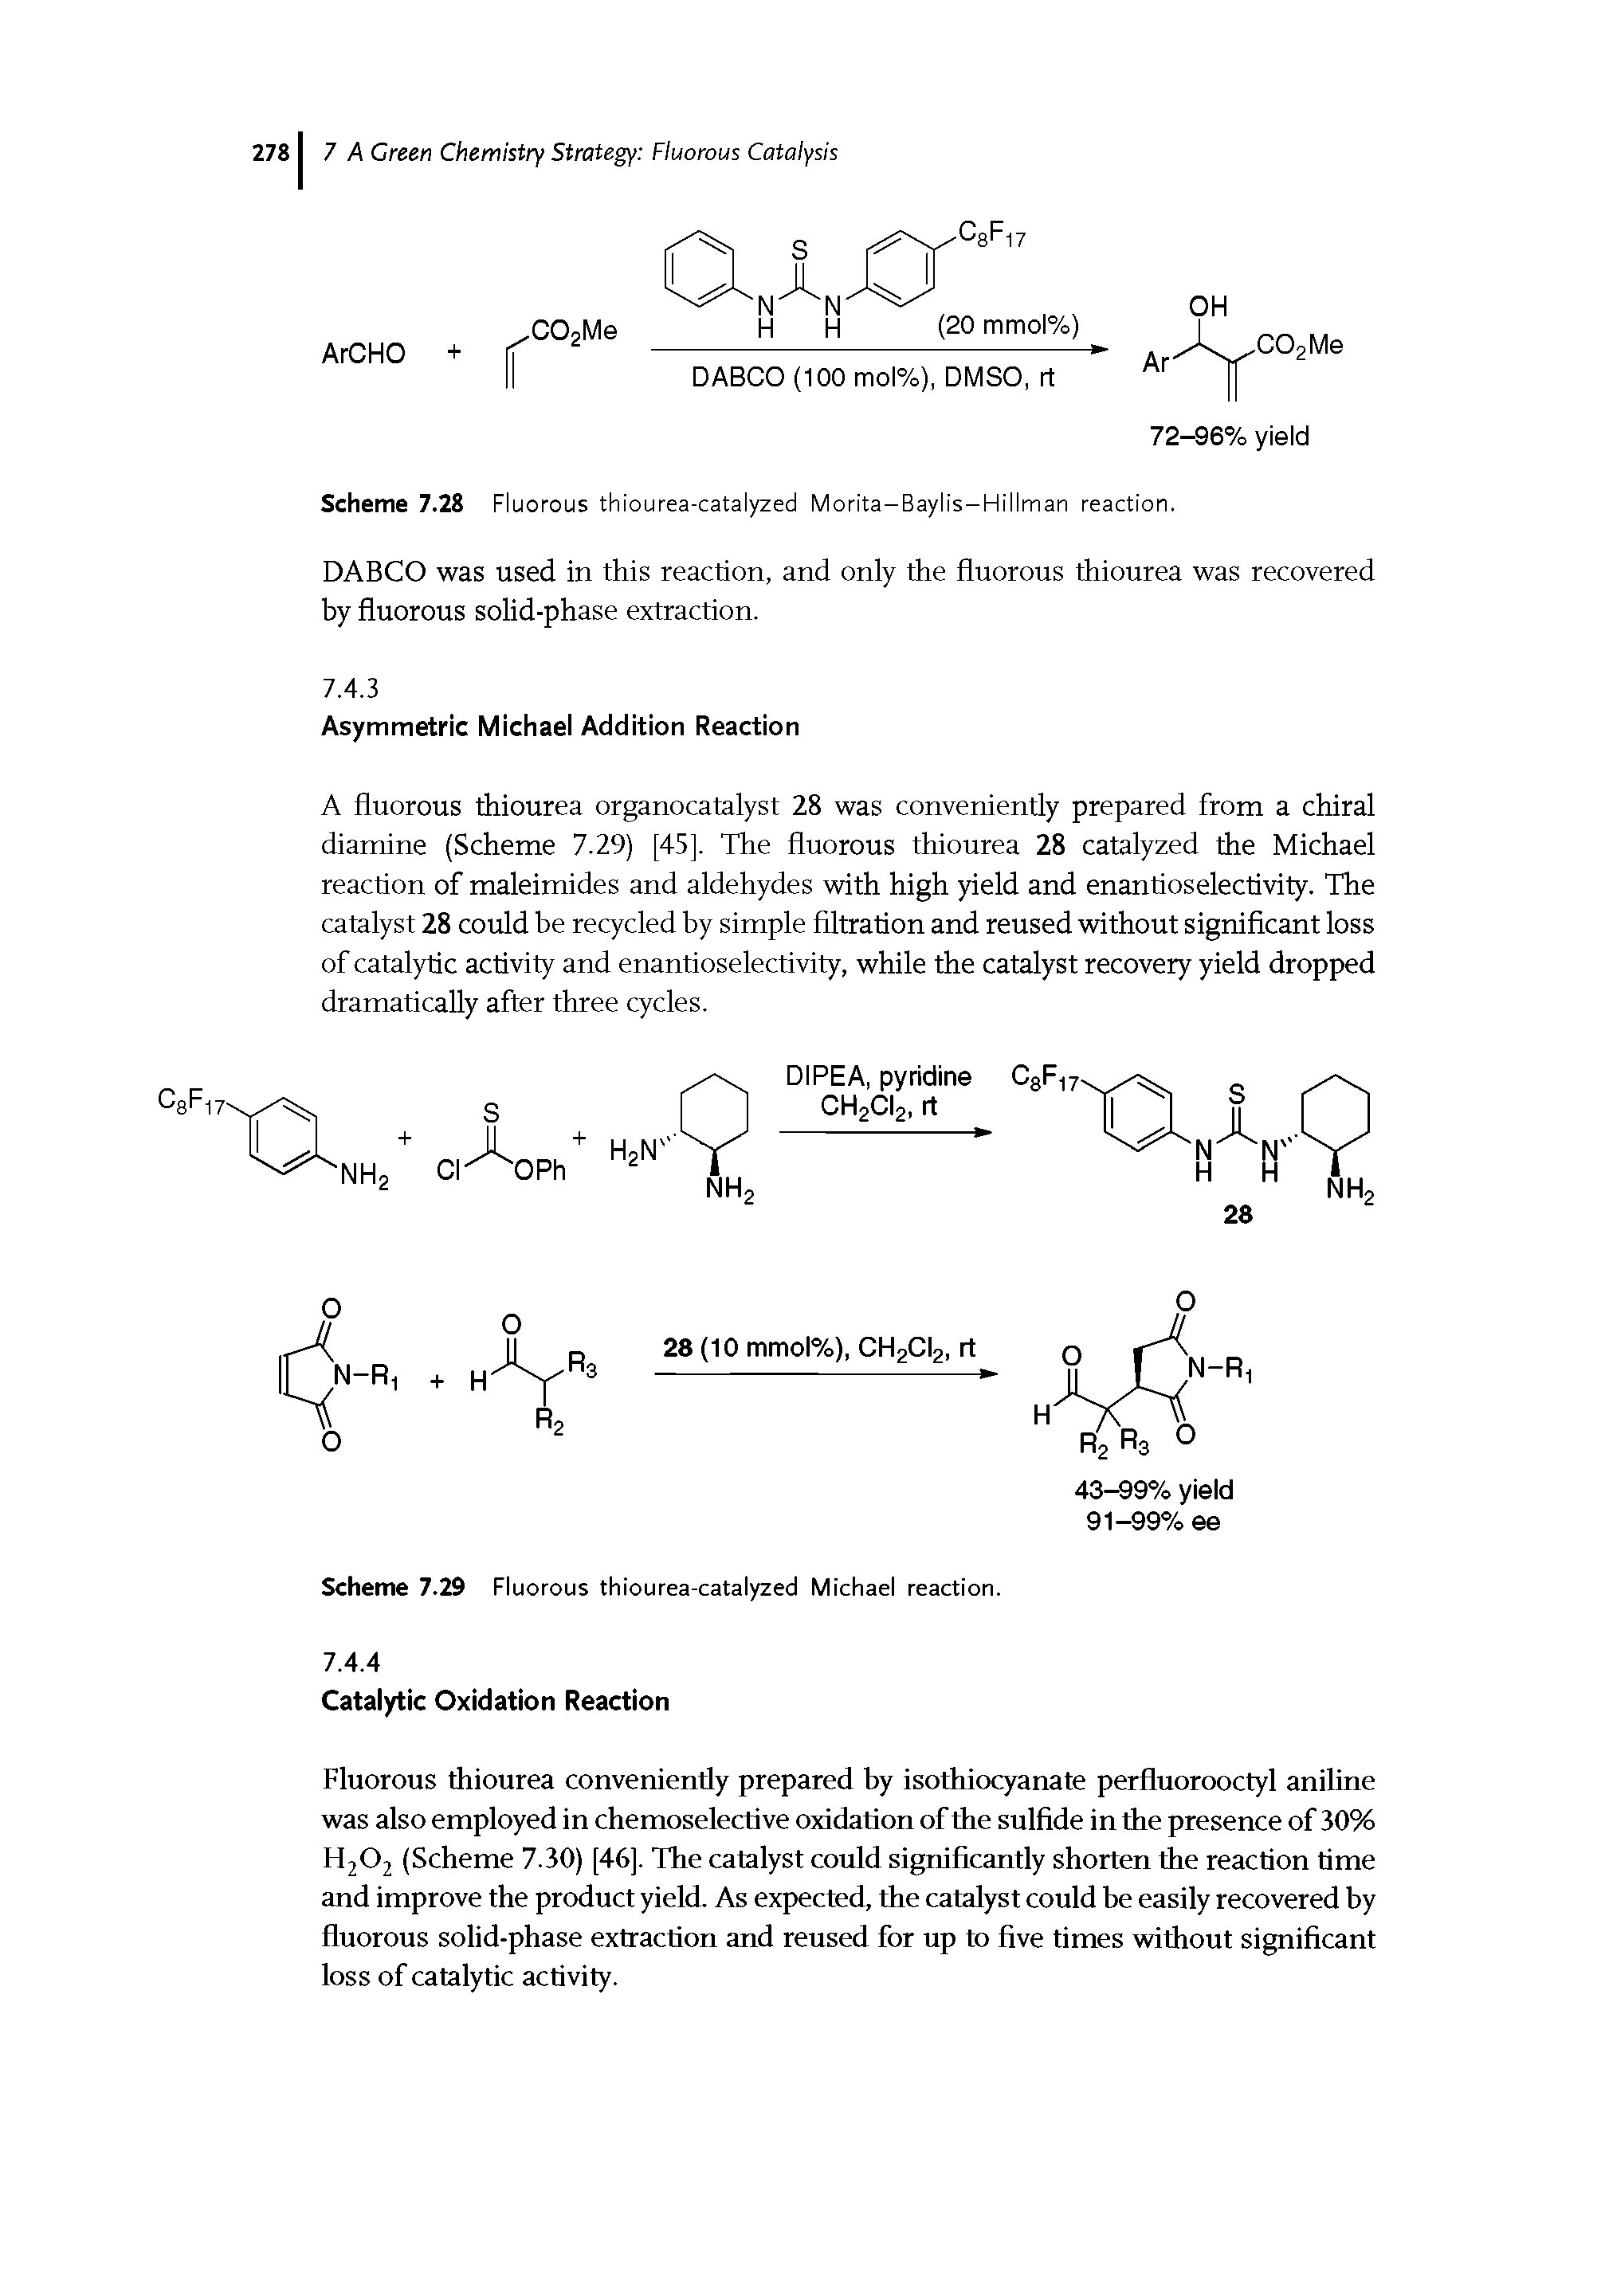 Scheme 7.29 Fluorous thiourea-catalyzed Michael reaction.